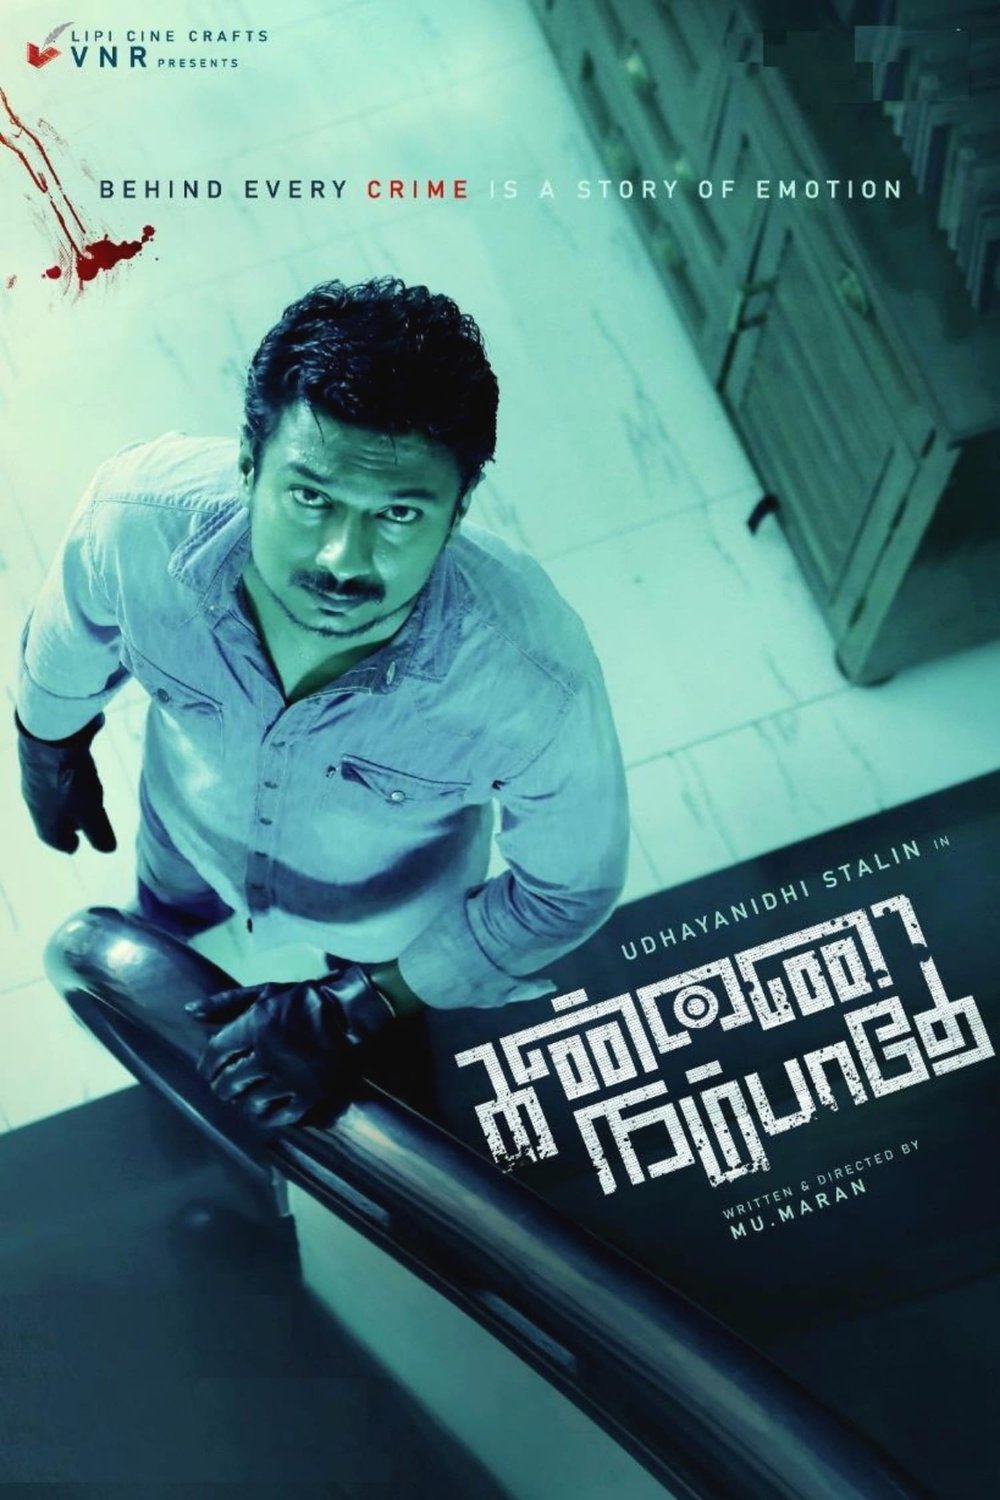 Tamil poster of the movie Kannai Nambathey